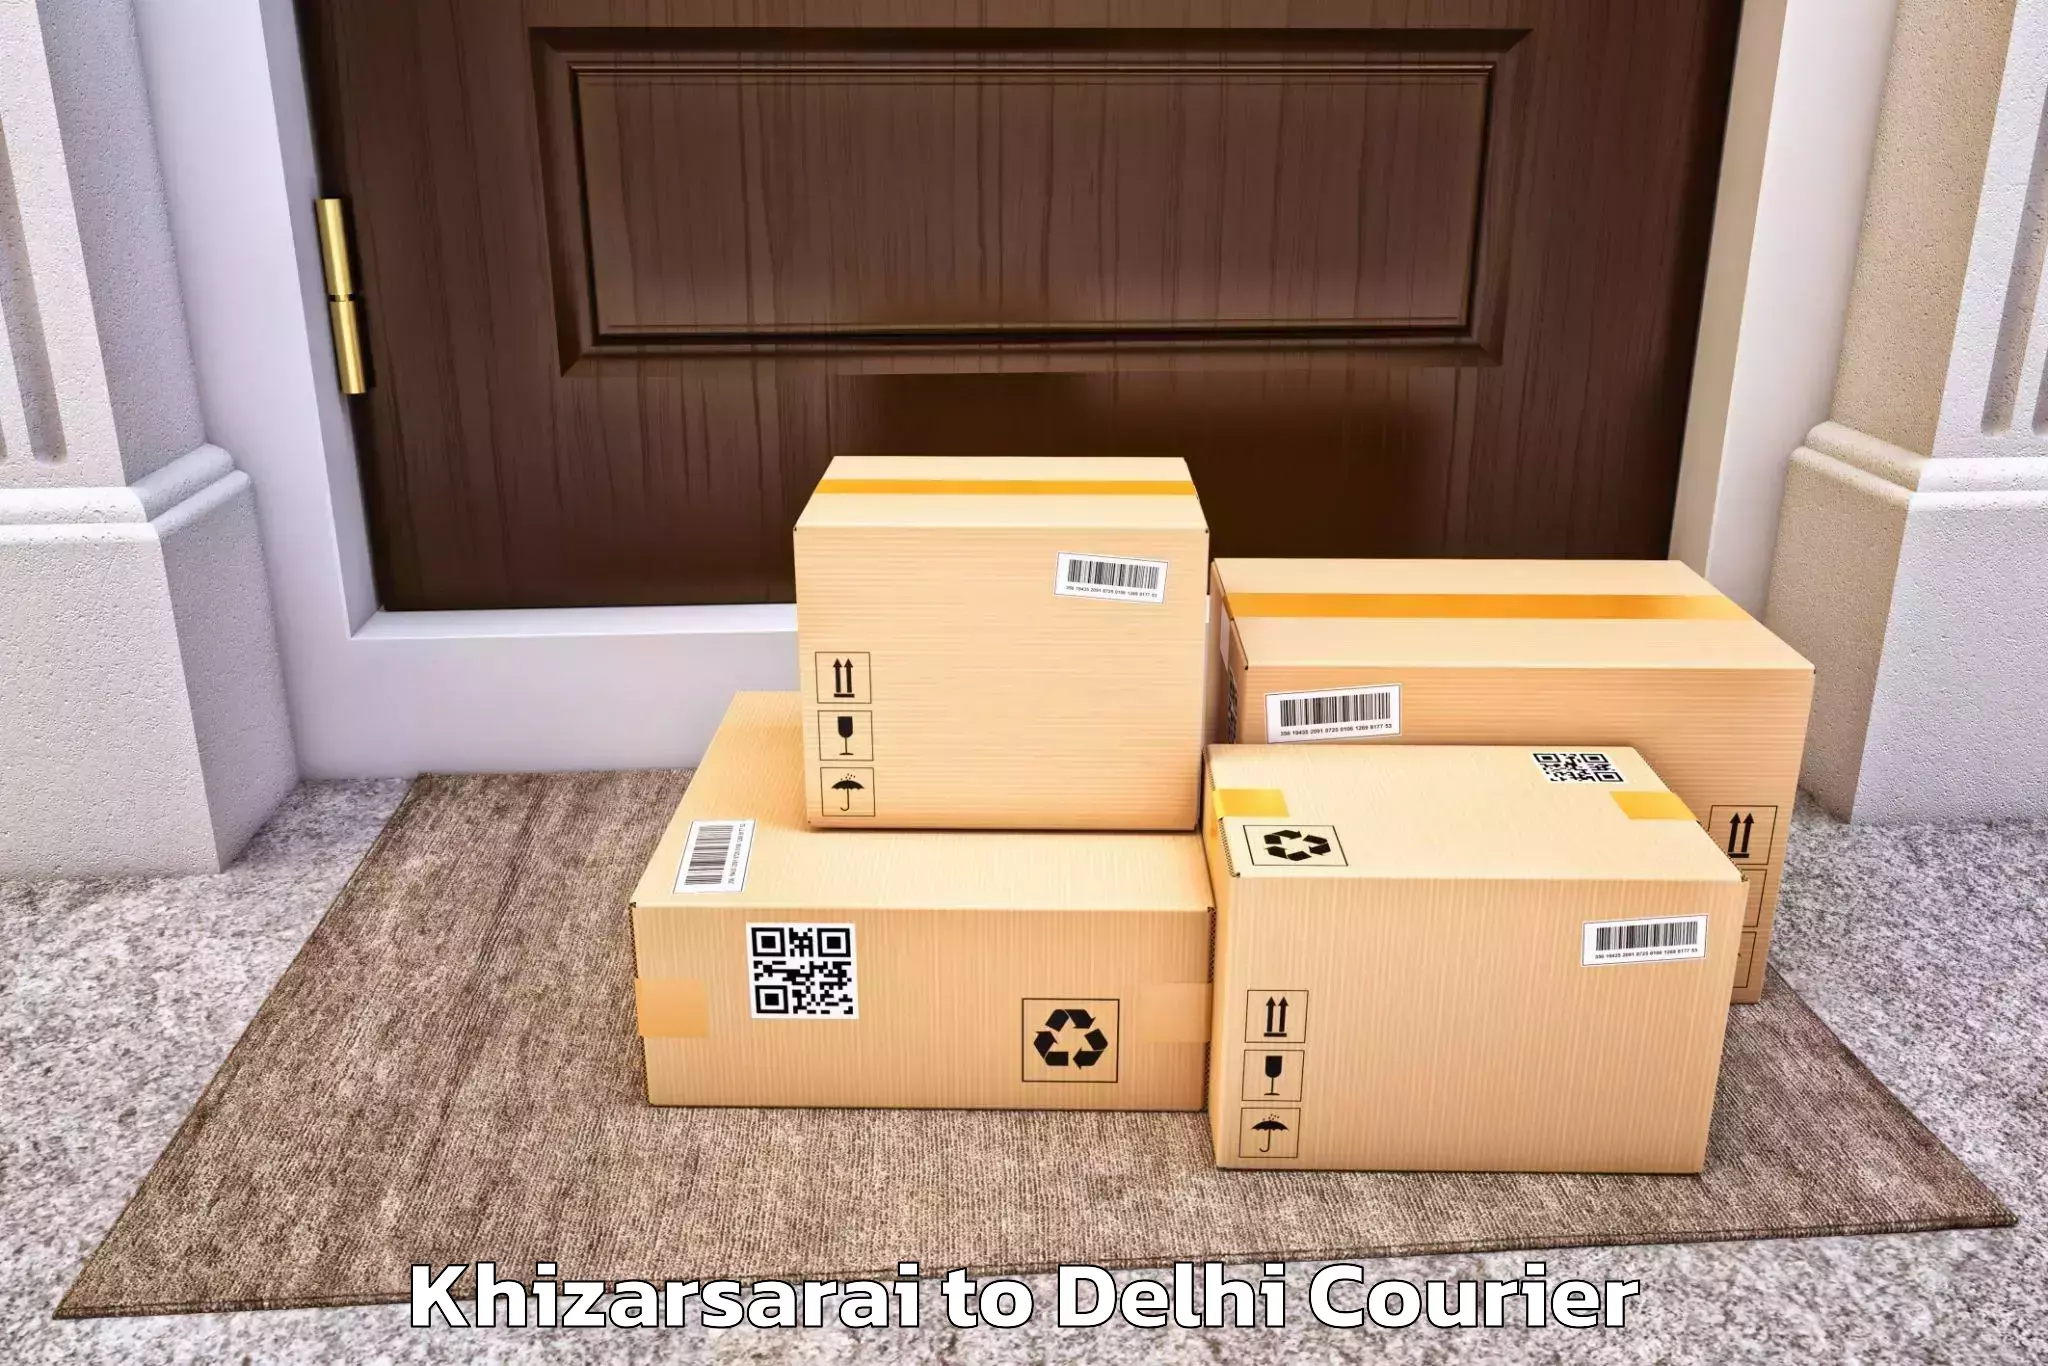 Customized moving experience Khizarsarai to NCR